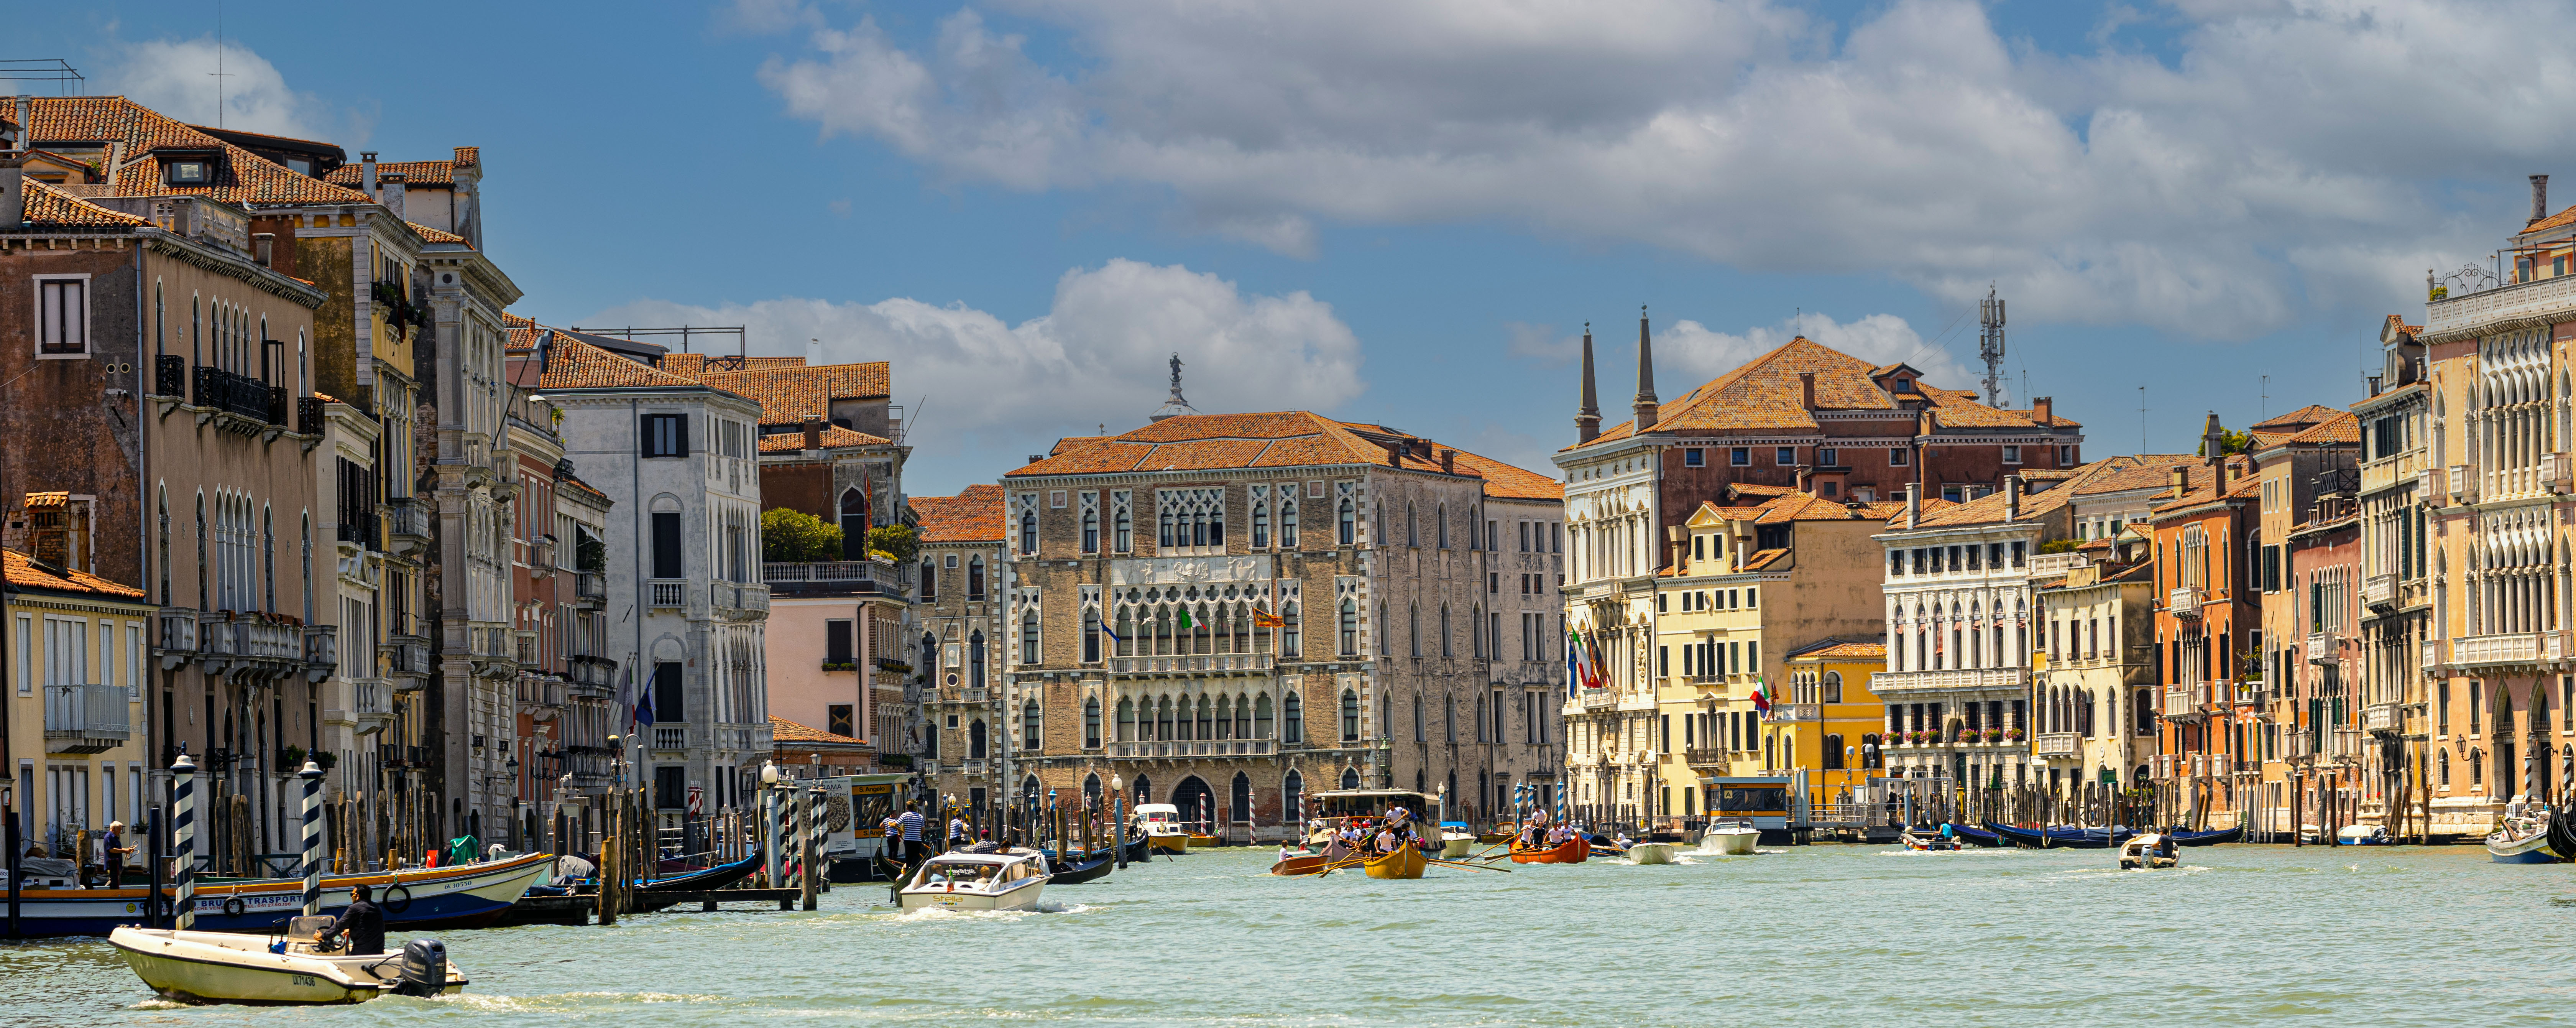 Venedig - Blick in den Canale Grande